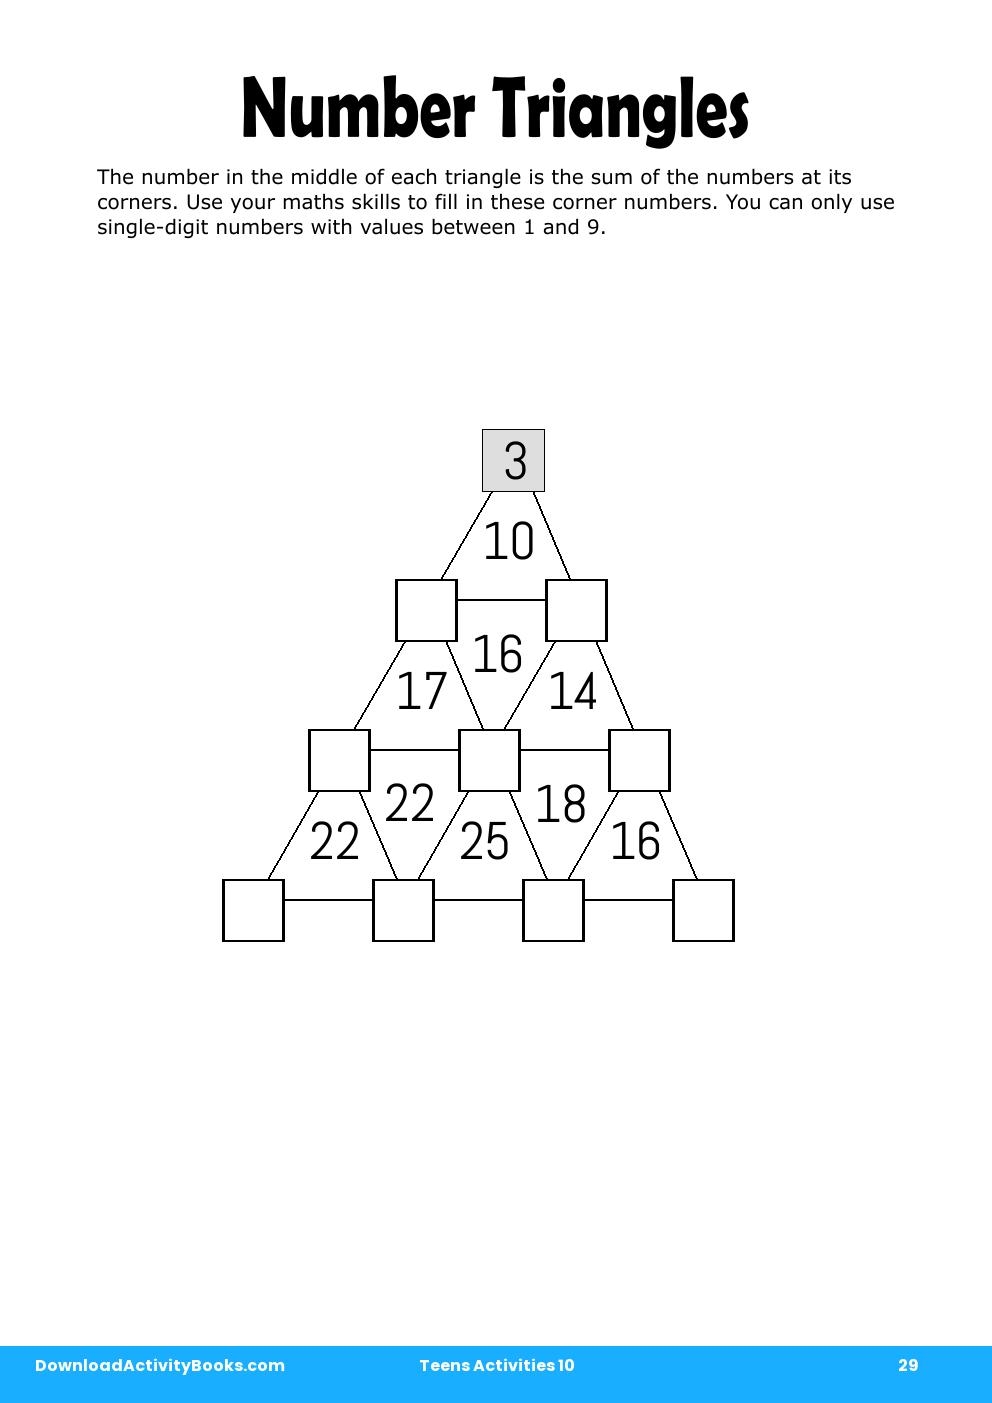 Number Triangles in Teens Activities 10